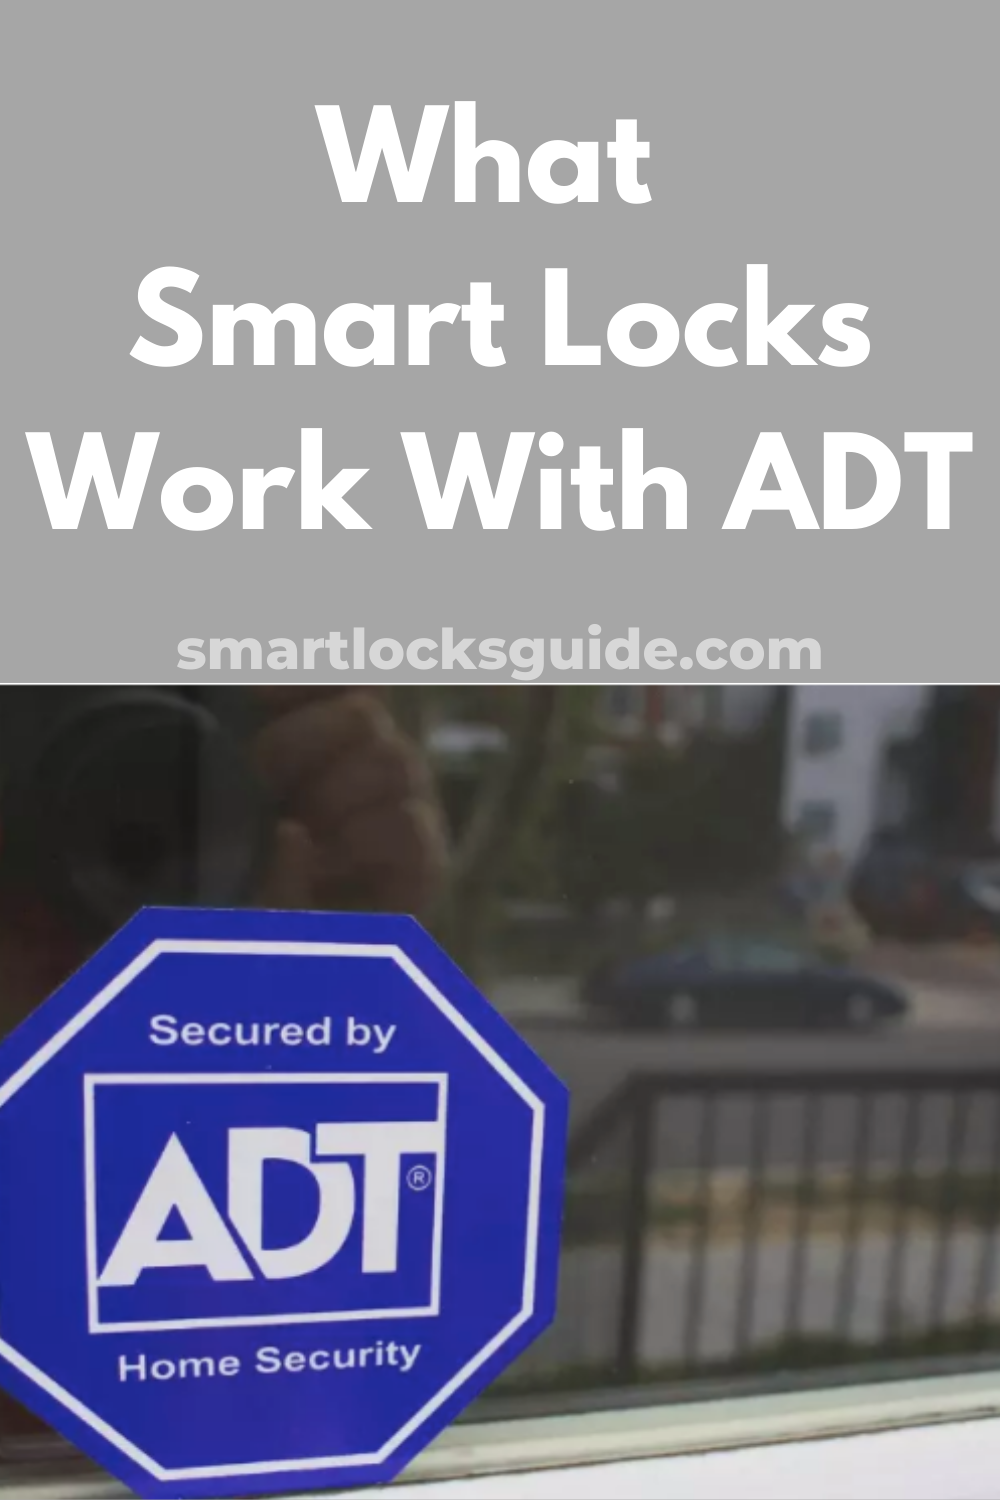 Best Smart Locks That Work With Adt